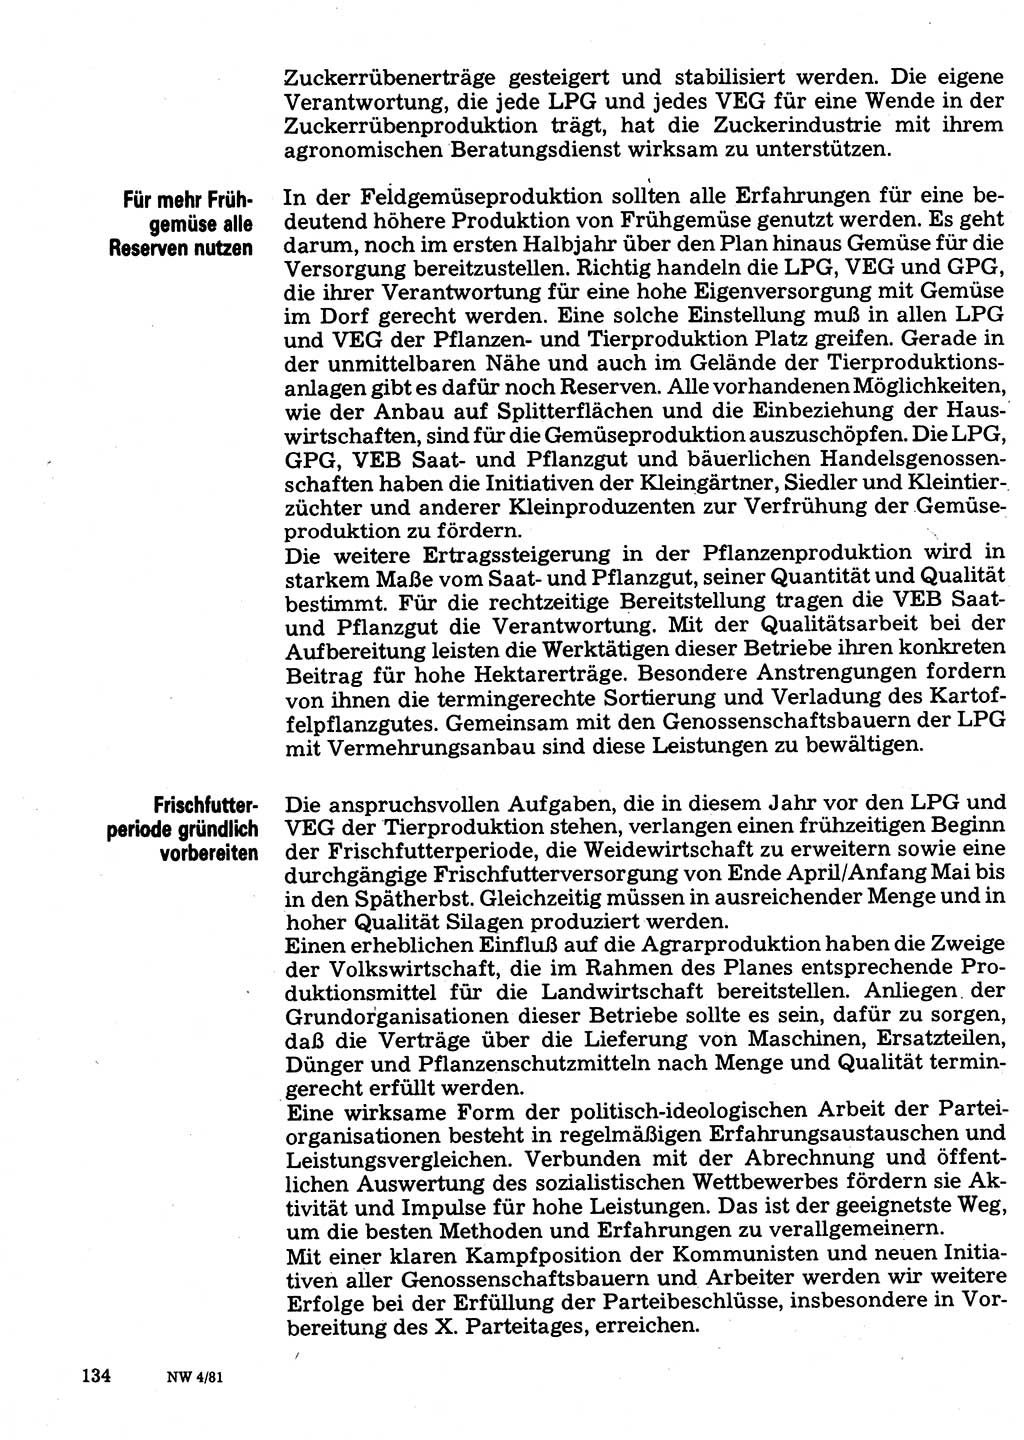 Neuer Weg (NW), Organ des Zentralkomitees (ZK) der SED (Sozialistische Einheitspartei Deutschlands) für Fragen des Parteilebens, 36. Jahrgang [Deutsche Demokratische Republik (DDR)] 1981, Seite 134 (NW ZK SED DDR 1981, S. 134)